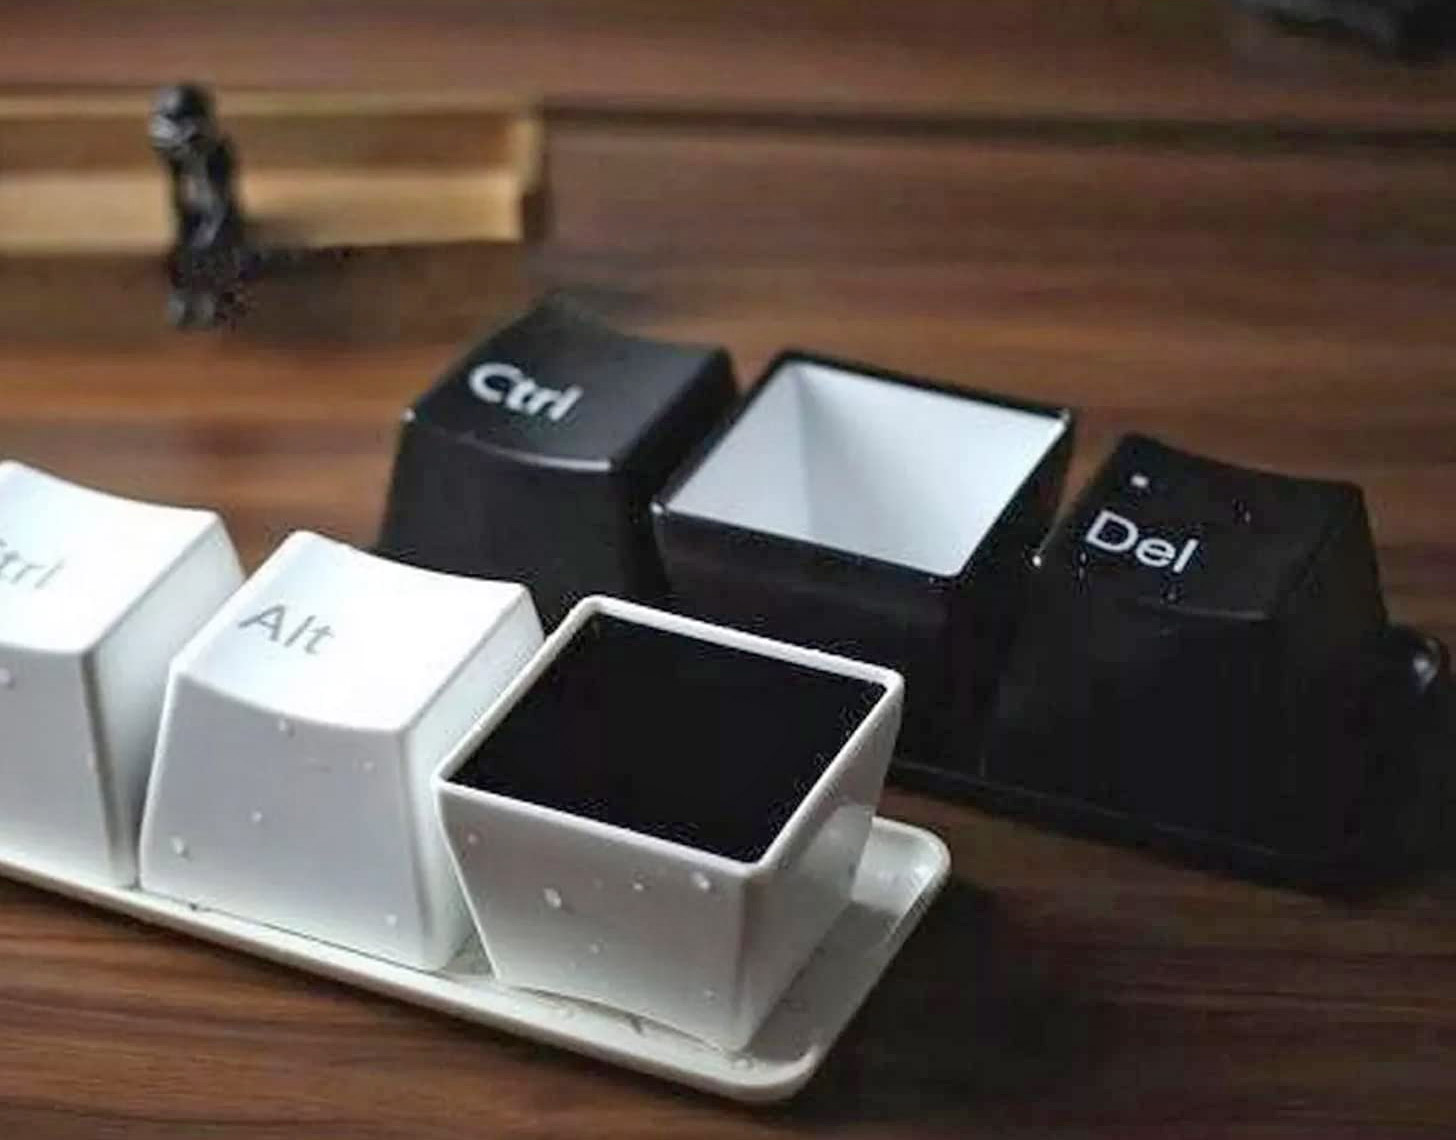 Keyboard Keys Coffee Mug Set - Ctrl-Alt-Del coffee cups